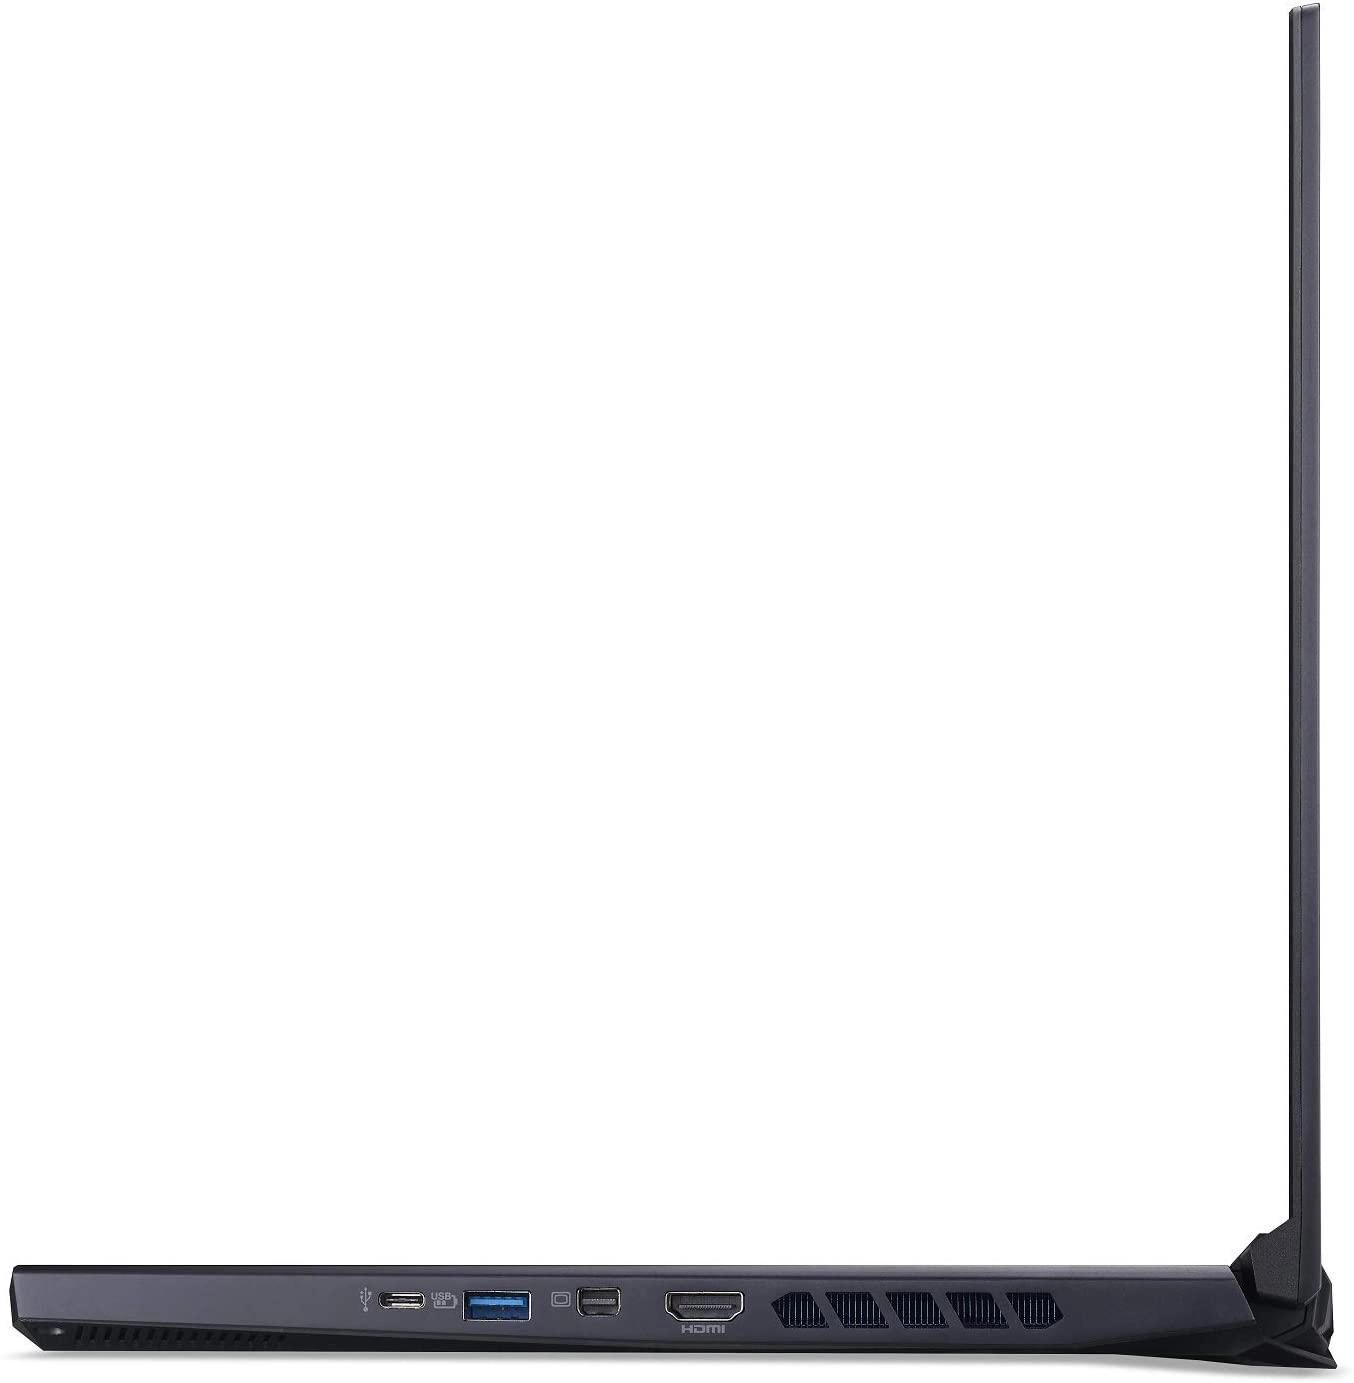 Acer PH315-52-710B laptop image